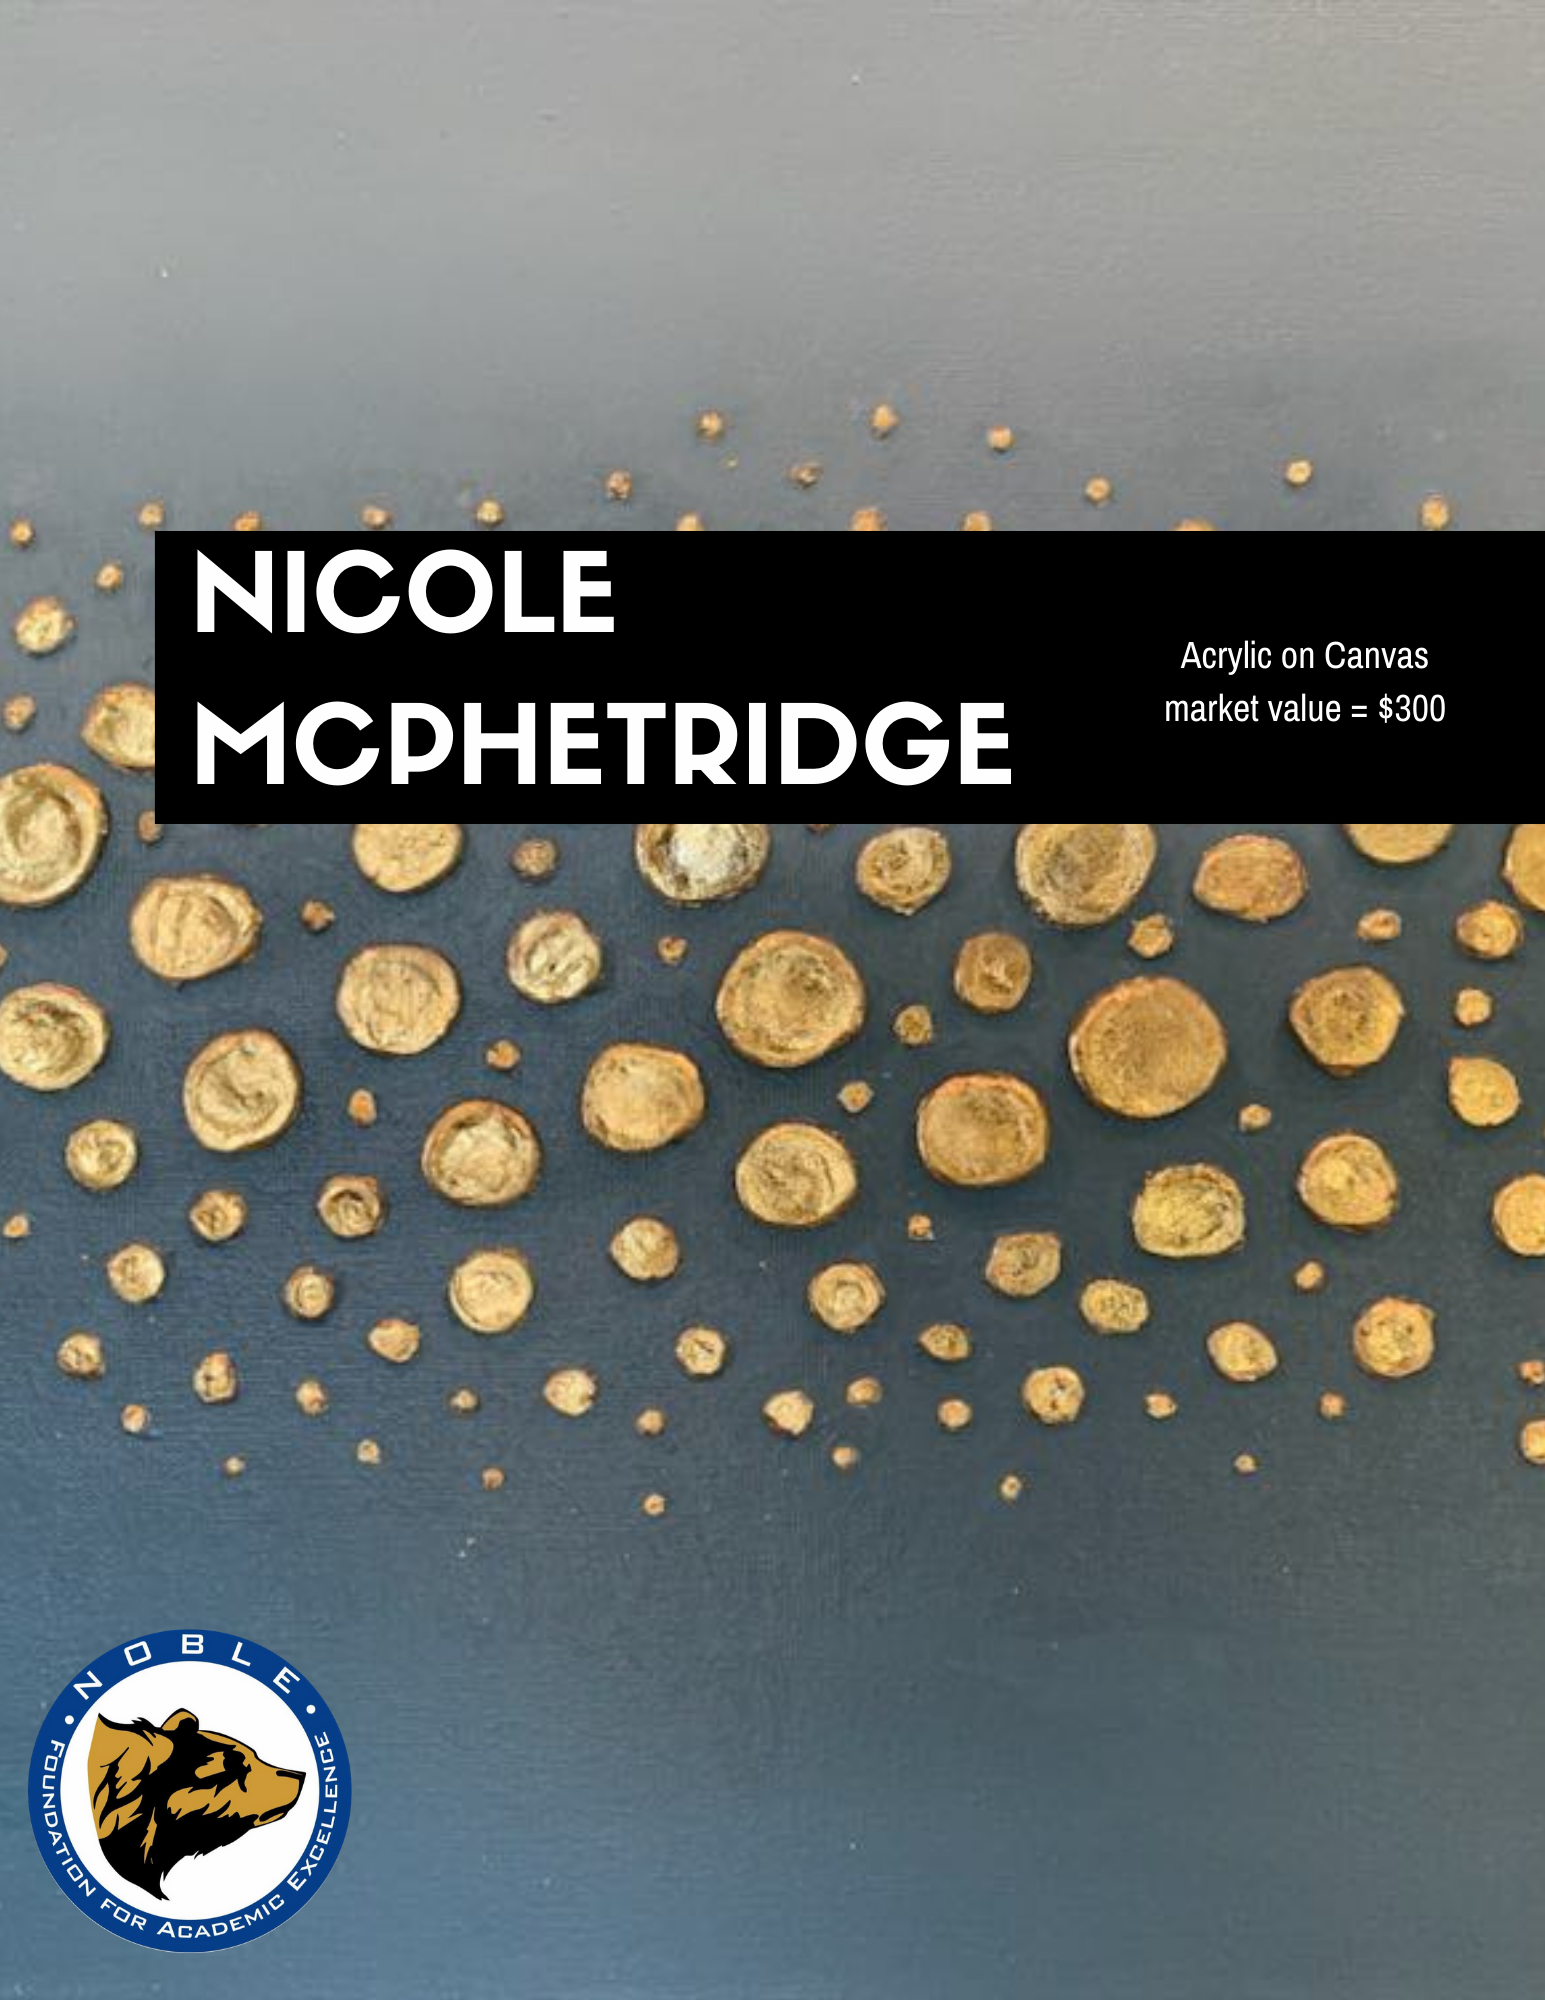 NICOLE MCPHETRIDGE 2.png